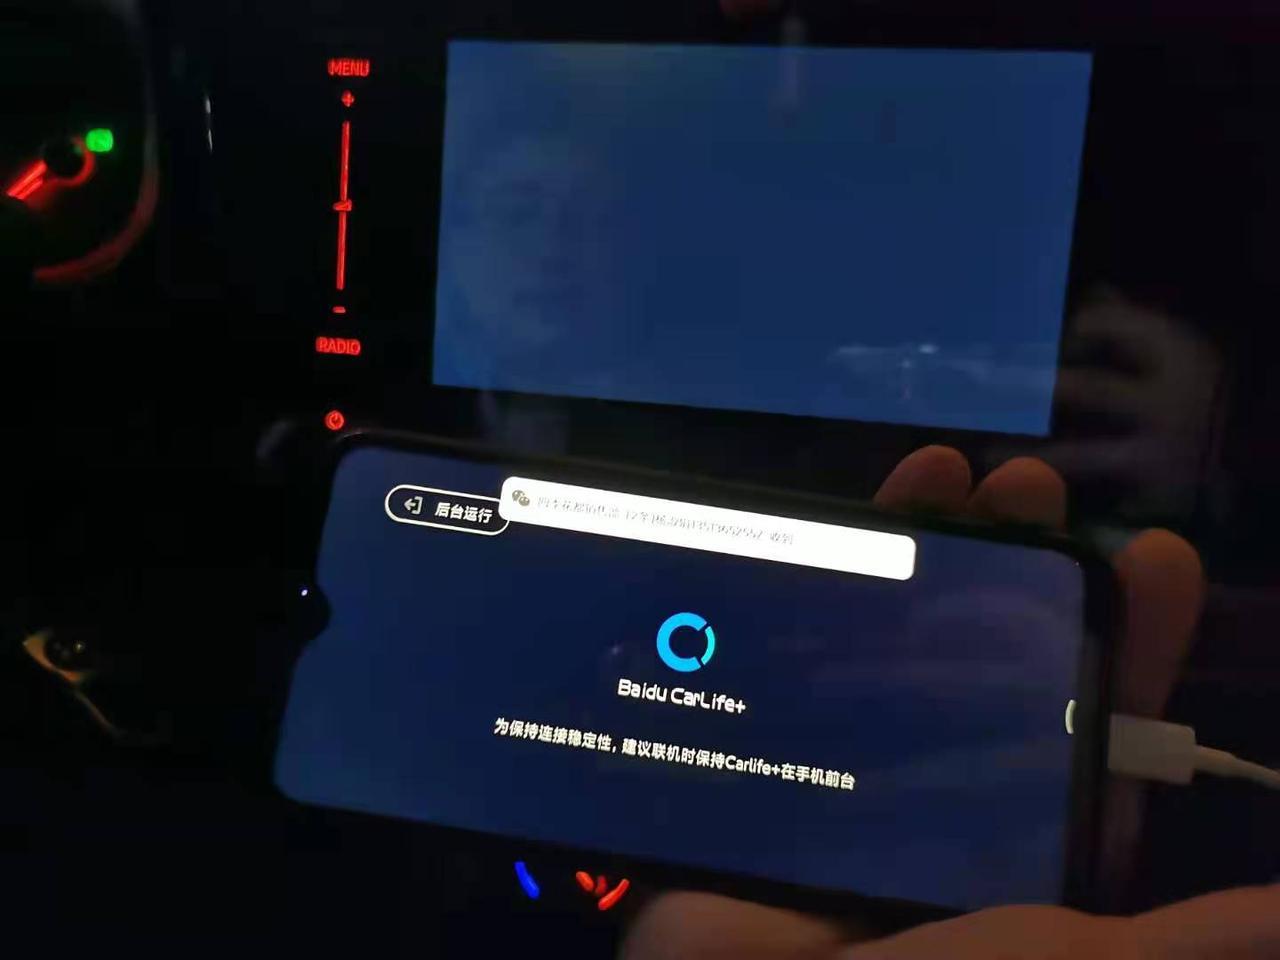 捷达vs5 为什么carlife连接后是黑屏，按压屏幕还有声音，就是没有影像。手机是红米note8Pro。